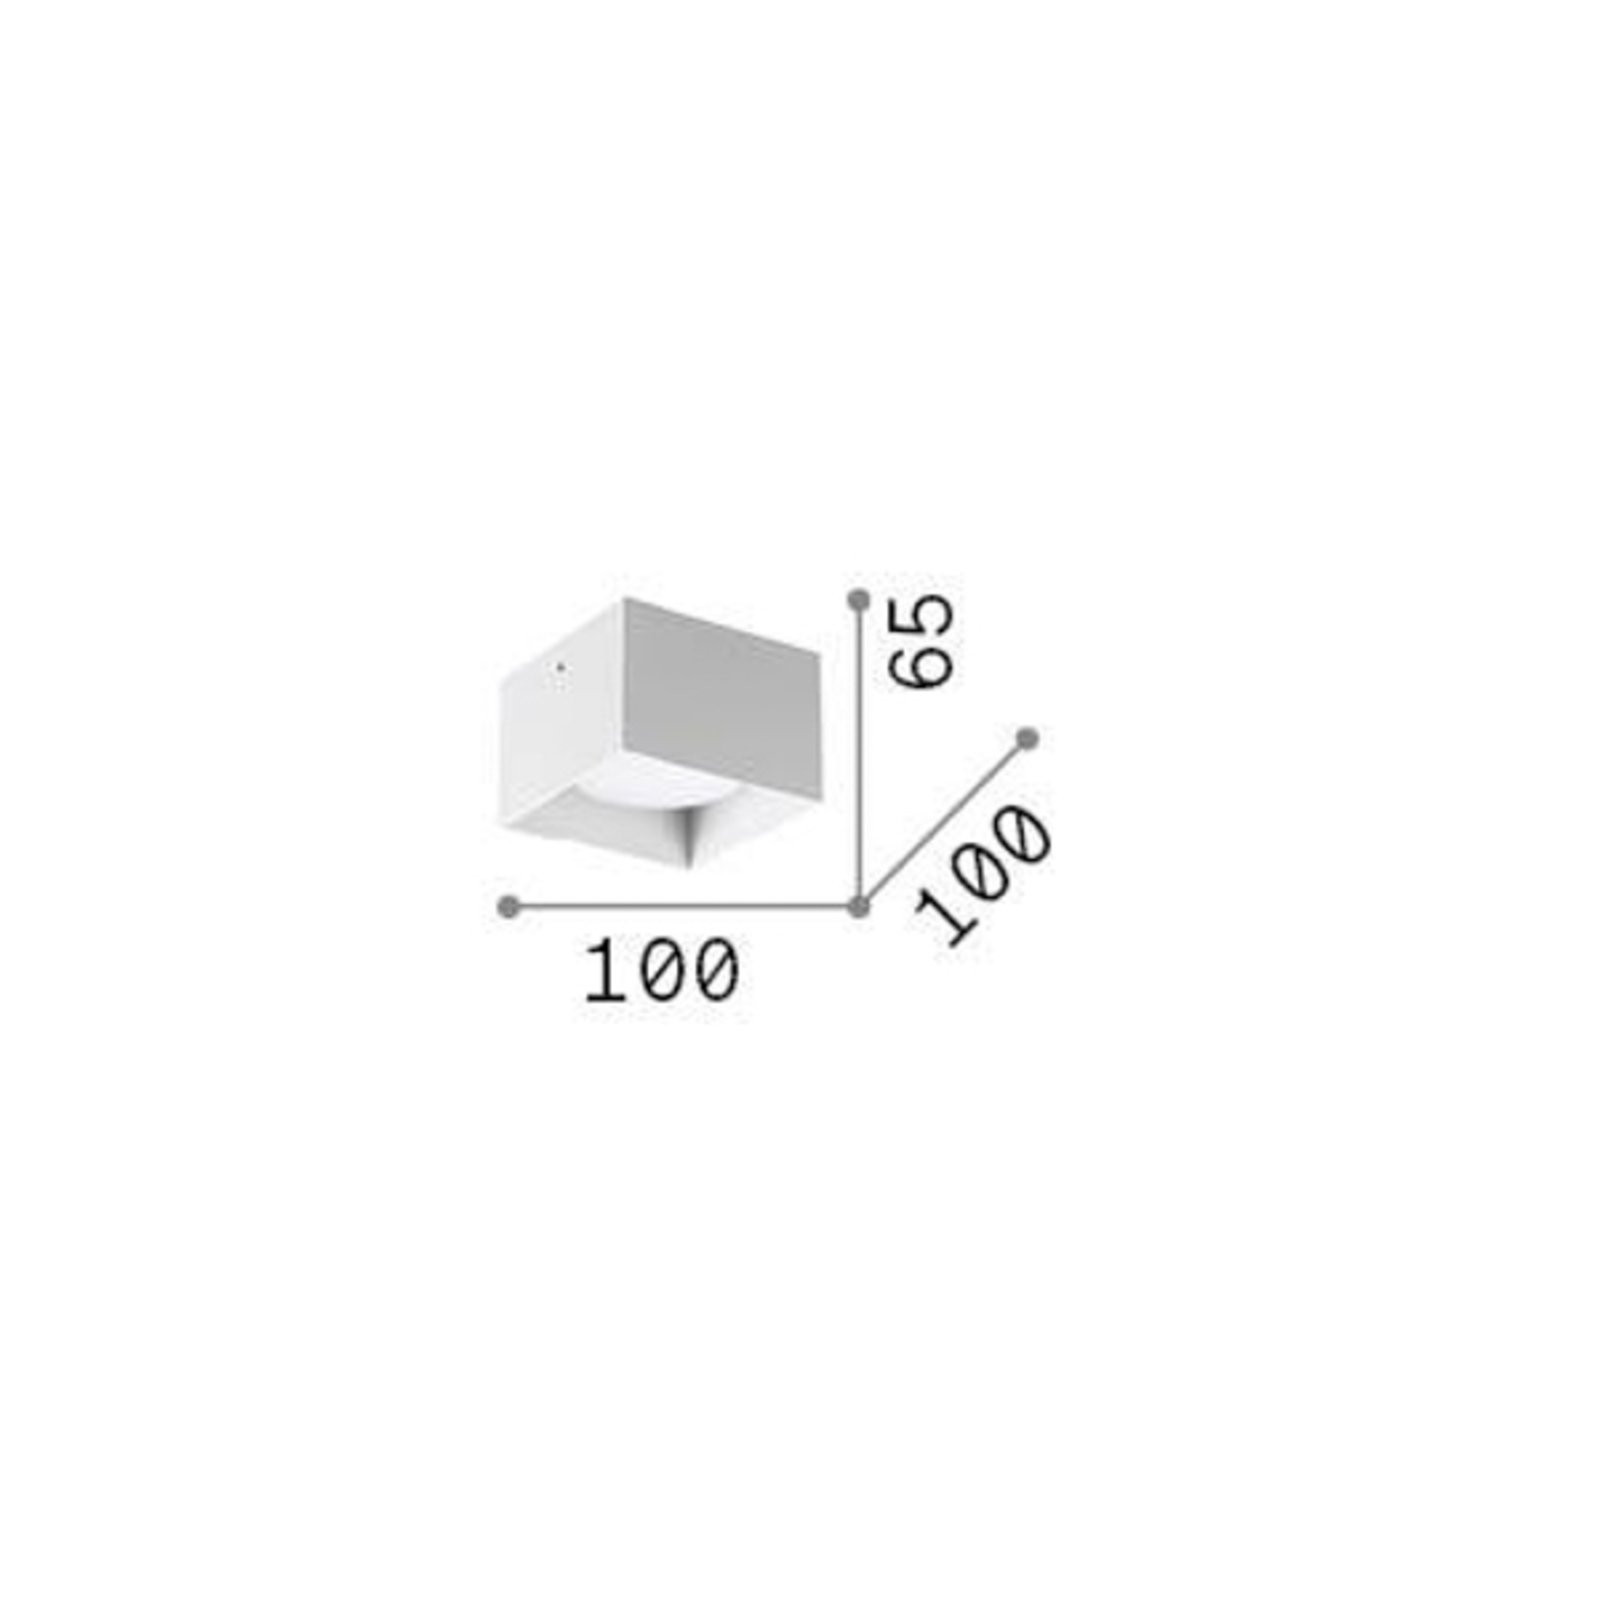 Ideal Lux downlight Spike Square, nickel-coloured, aluminium, 10x10cm